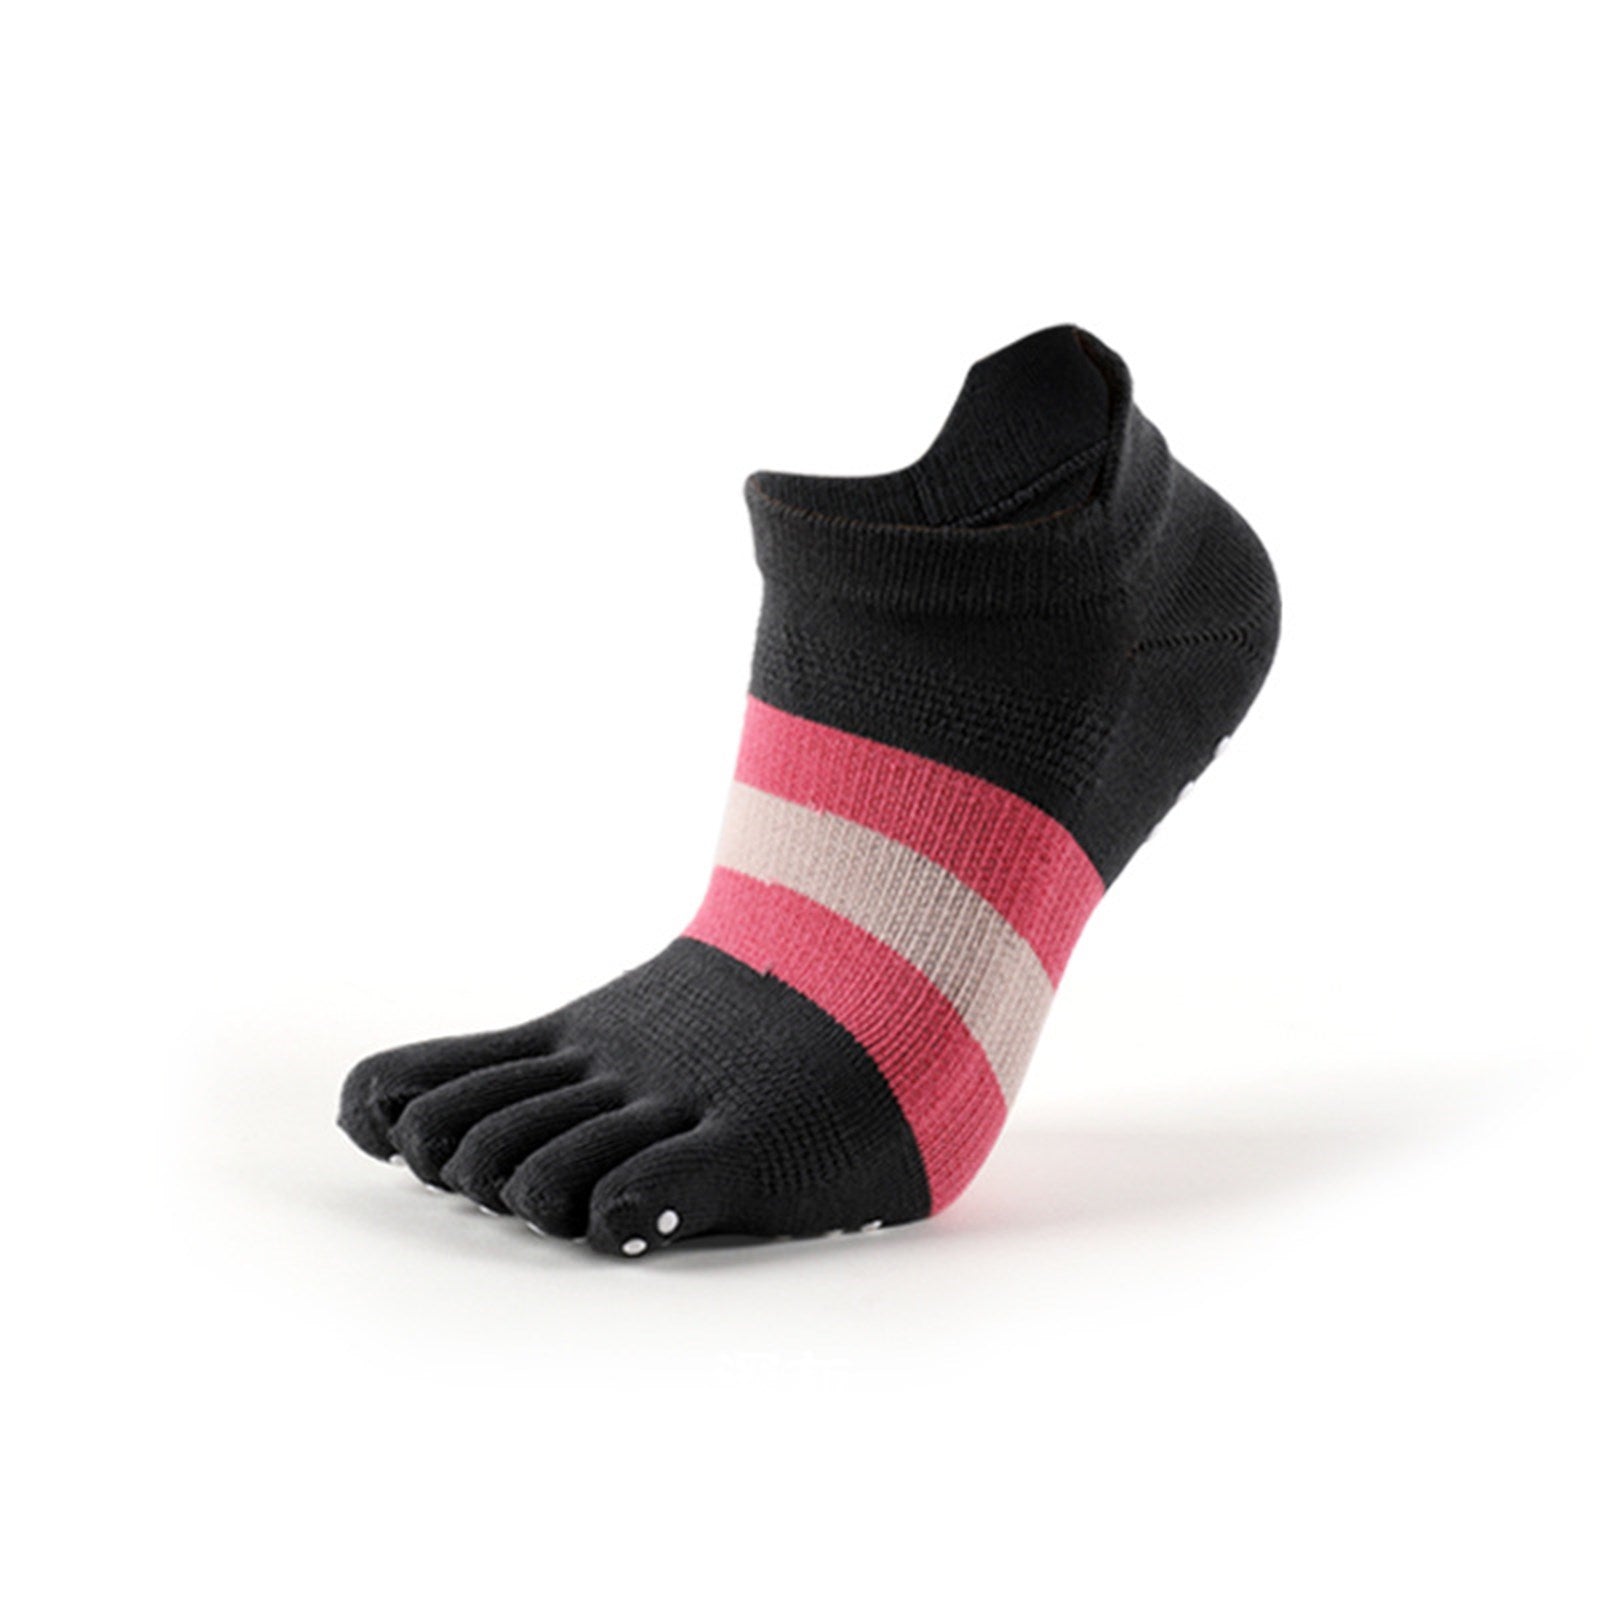 Non-Slip Yoga Toe Socks - Grey